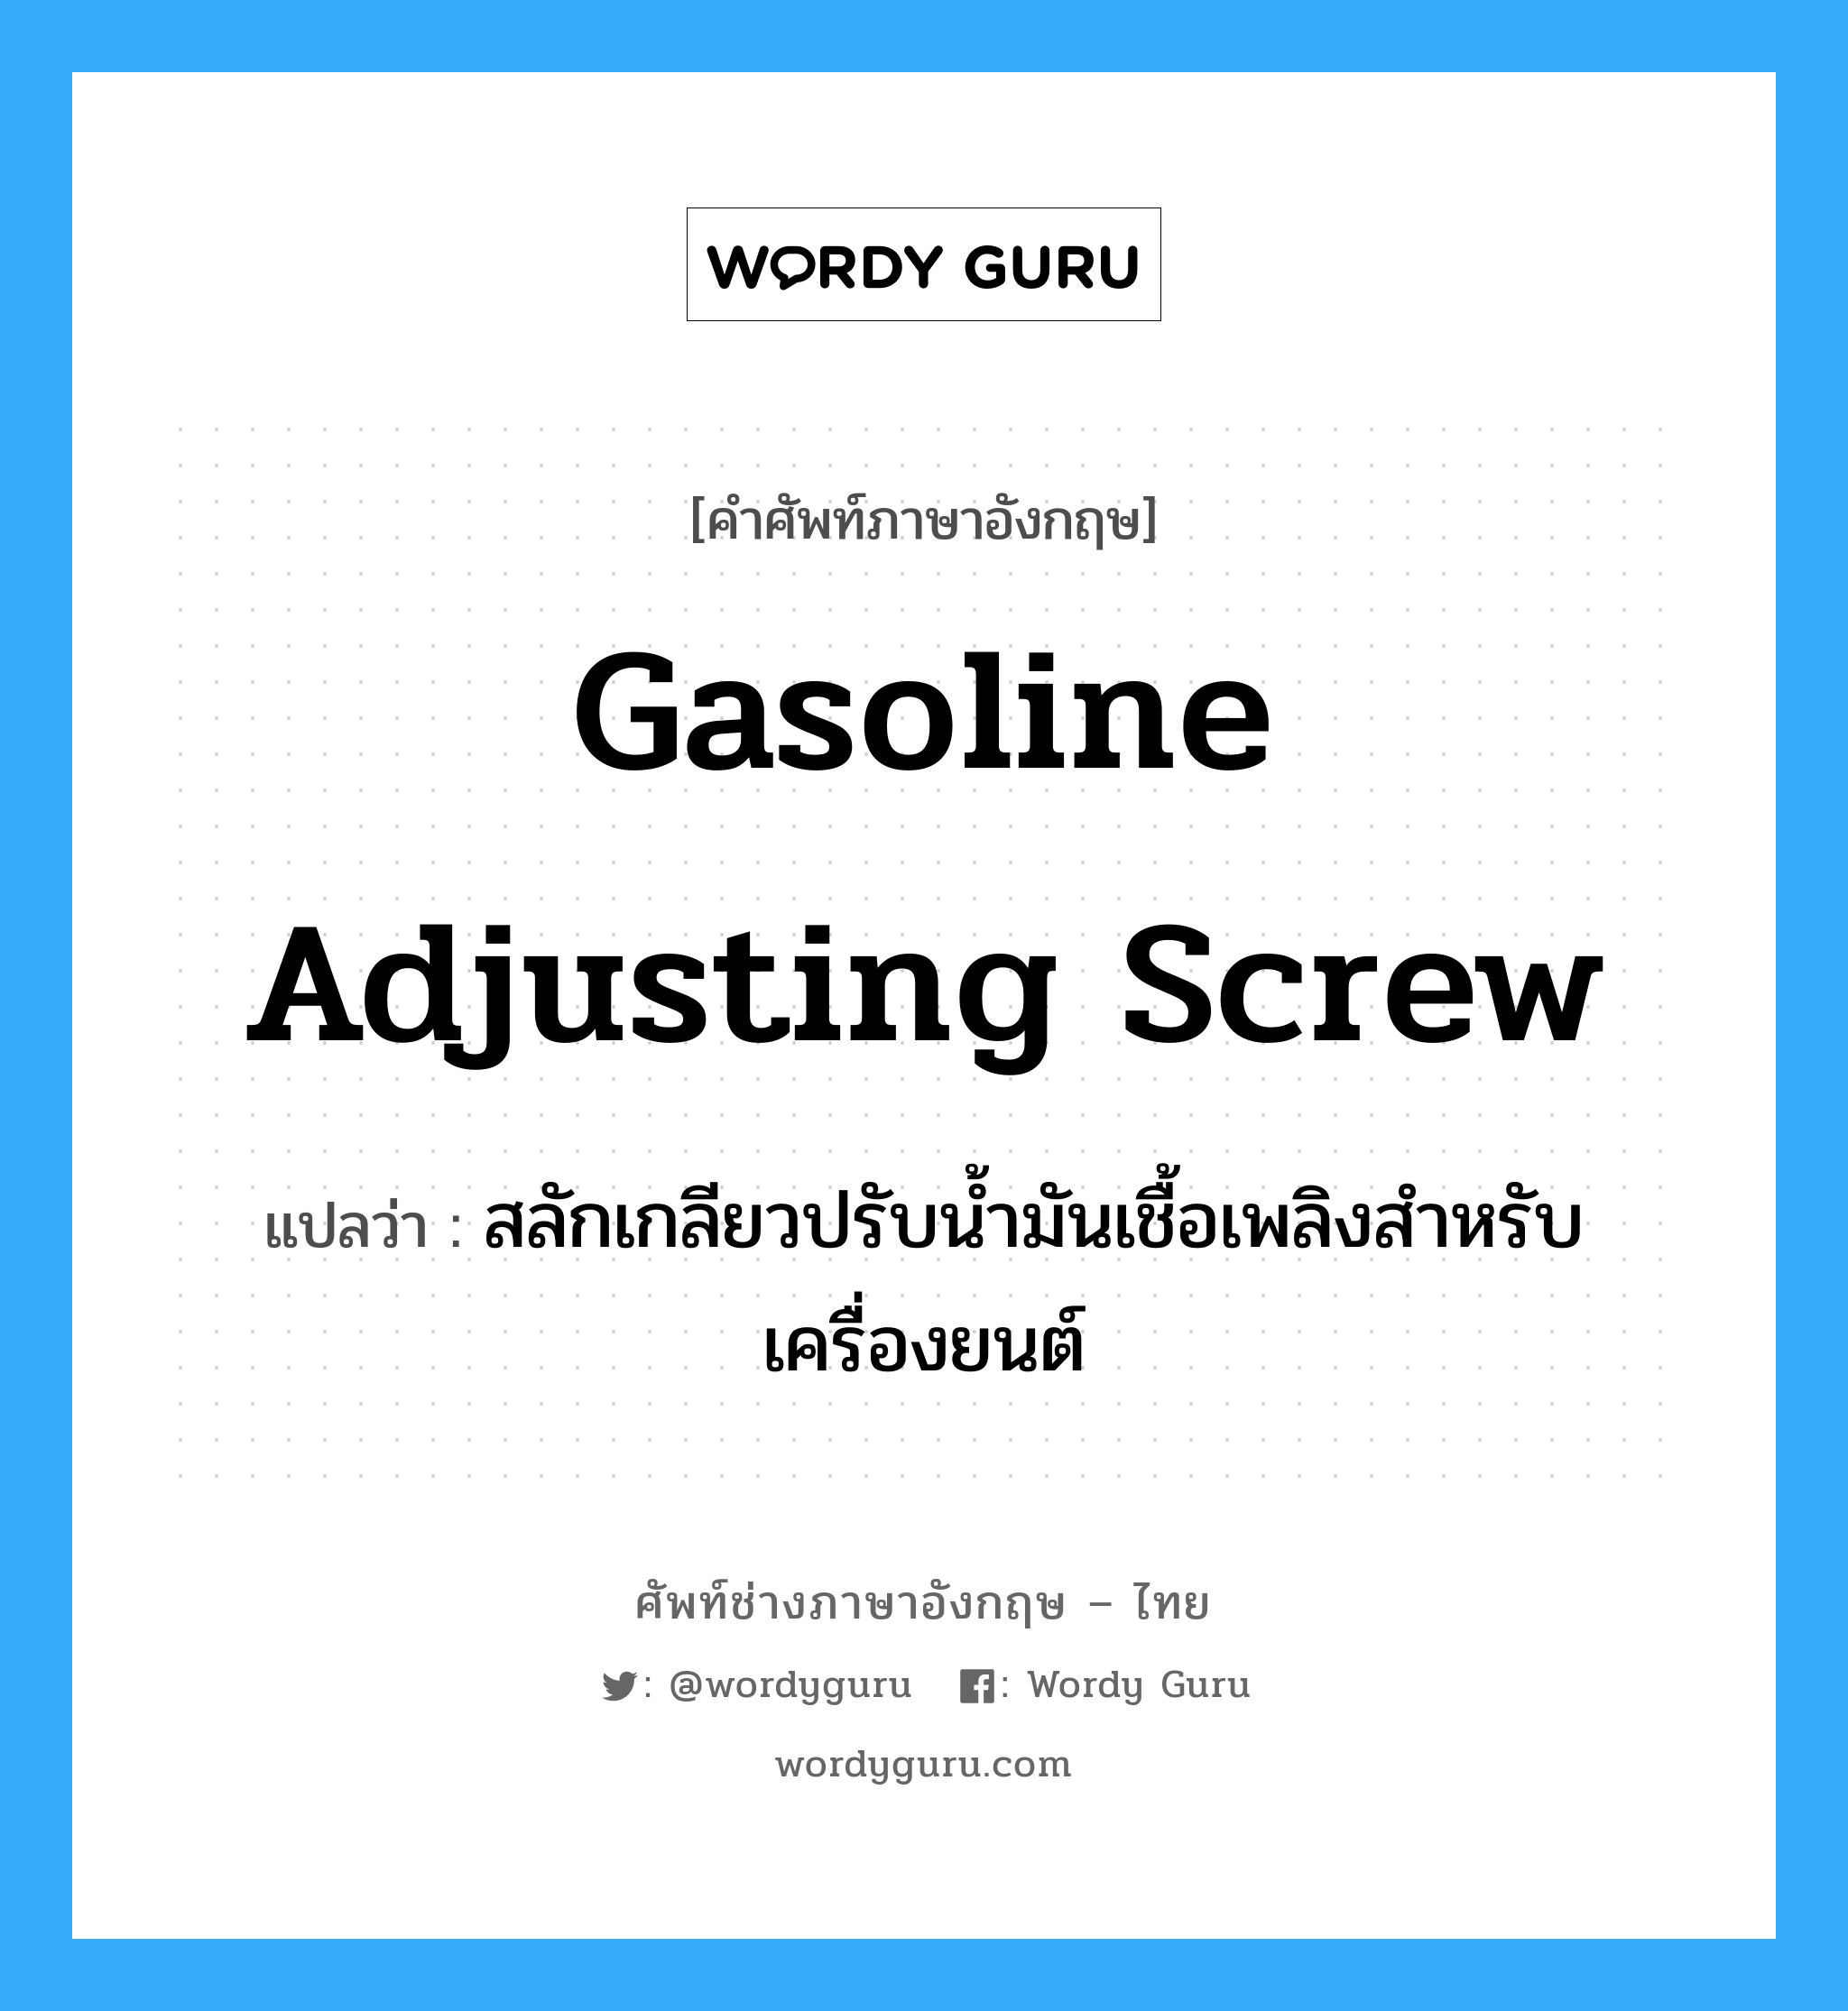 gasoline adjusting screw แปลว่า?, คำศัพท์ช่างภาษาอังกฤษ - ไทย gasoline adjusting screw คำศัพท์ภาษาอังกฤษ gasoline adjusting screw แปลว่า สลักเกลียวปรับน้ำมันเชื้อเพลิงสำหรับเครื่องยนต์